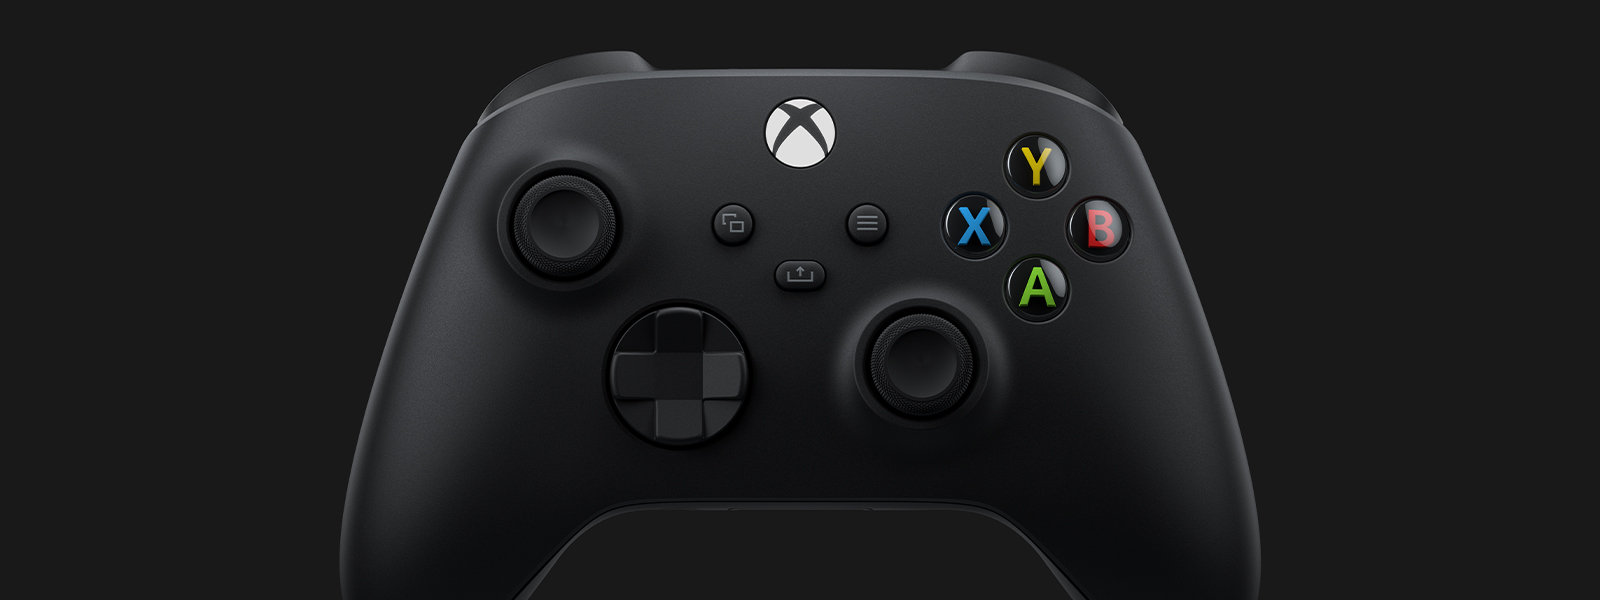 Xbox ワイヤレス コントローラー (カーボン ブラック) の正面斜め図